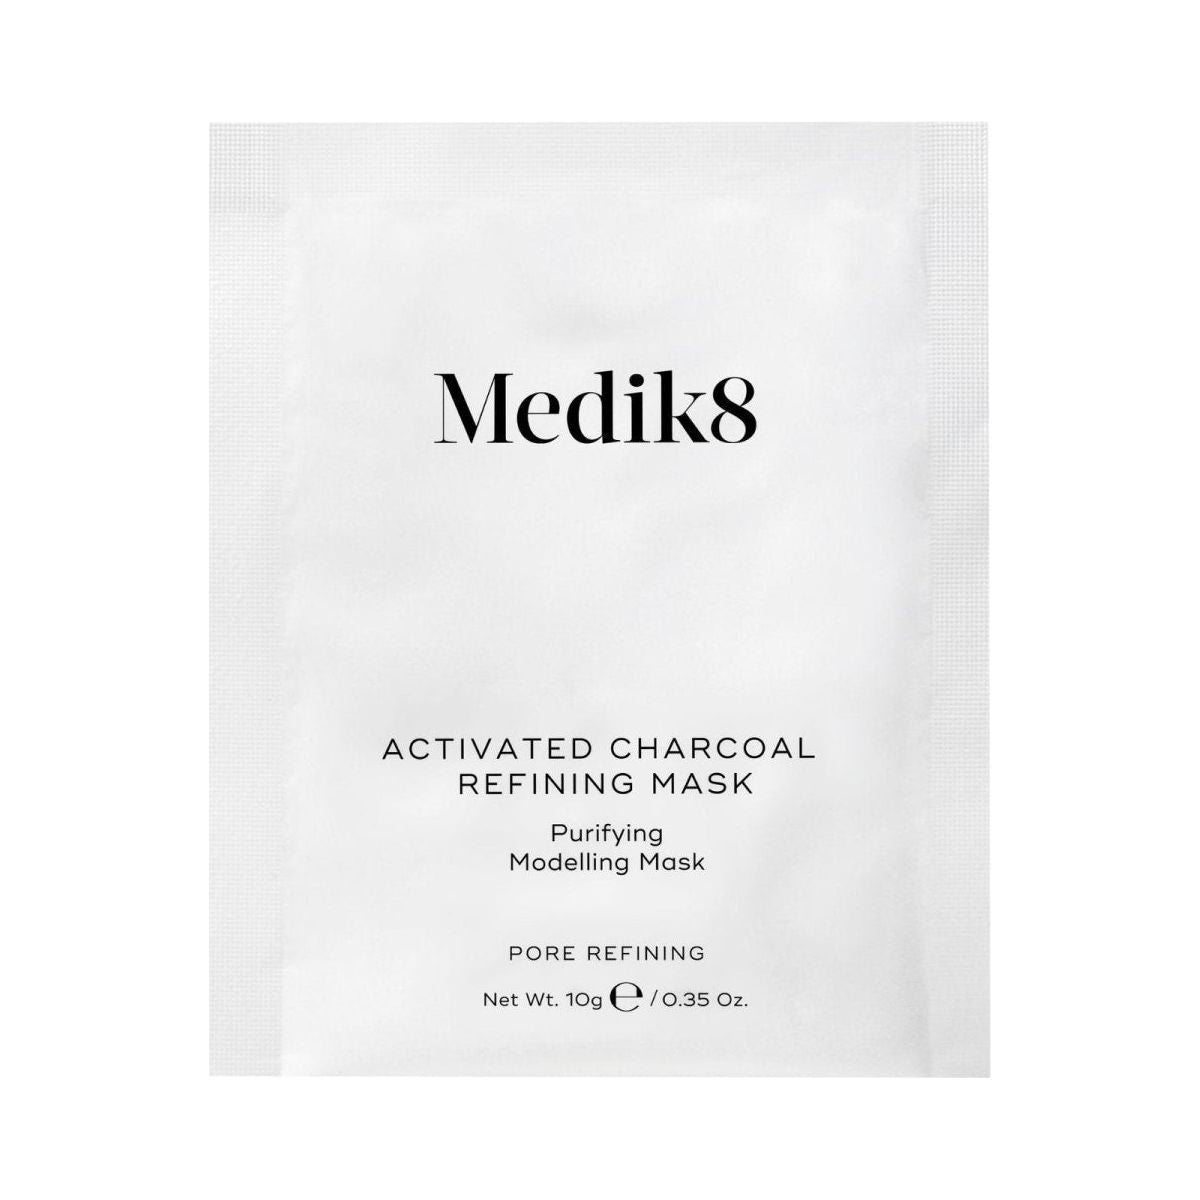 Medik8 | Activated Charcoal Refining Mask Kit | 4 Masks - DG International Ventures Limited